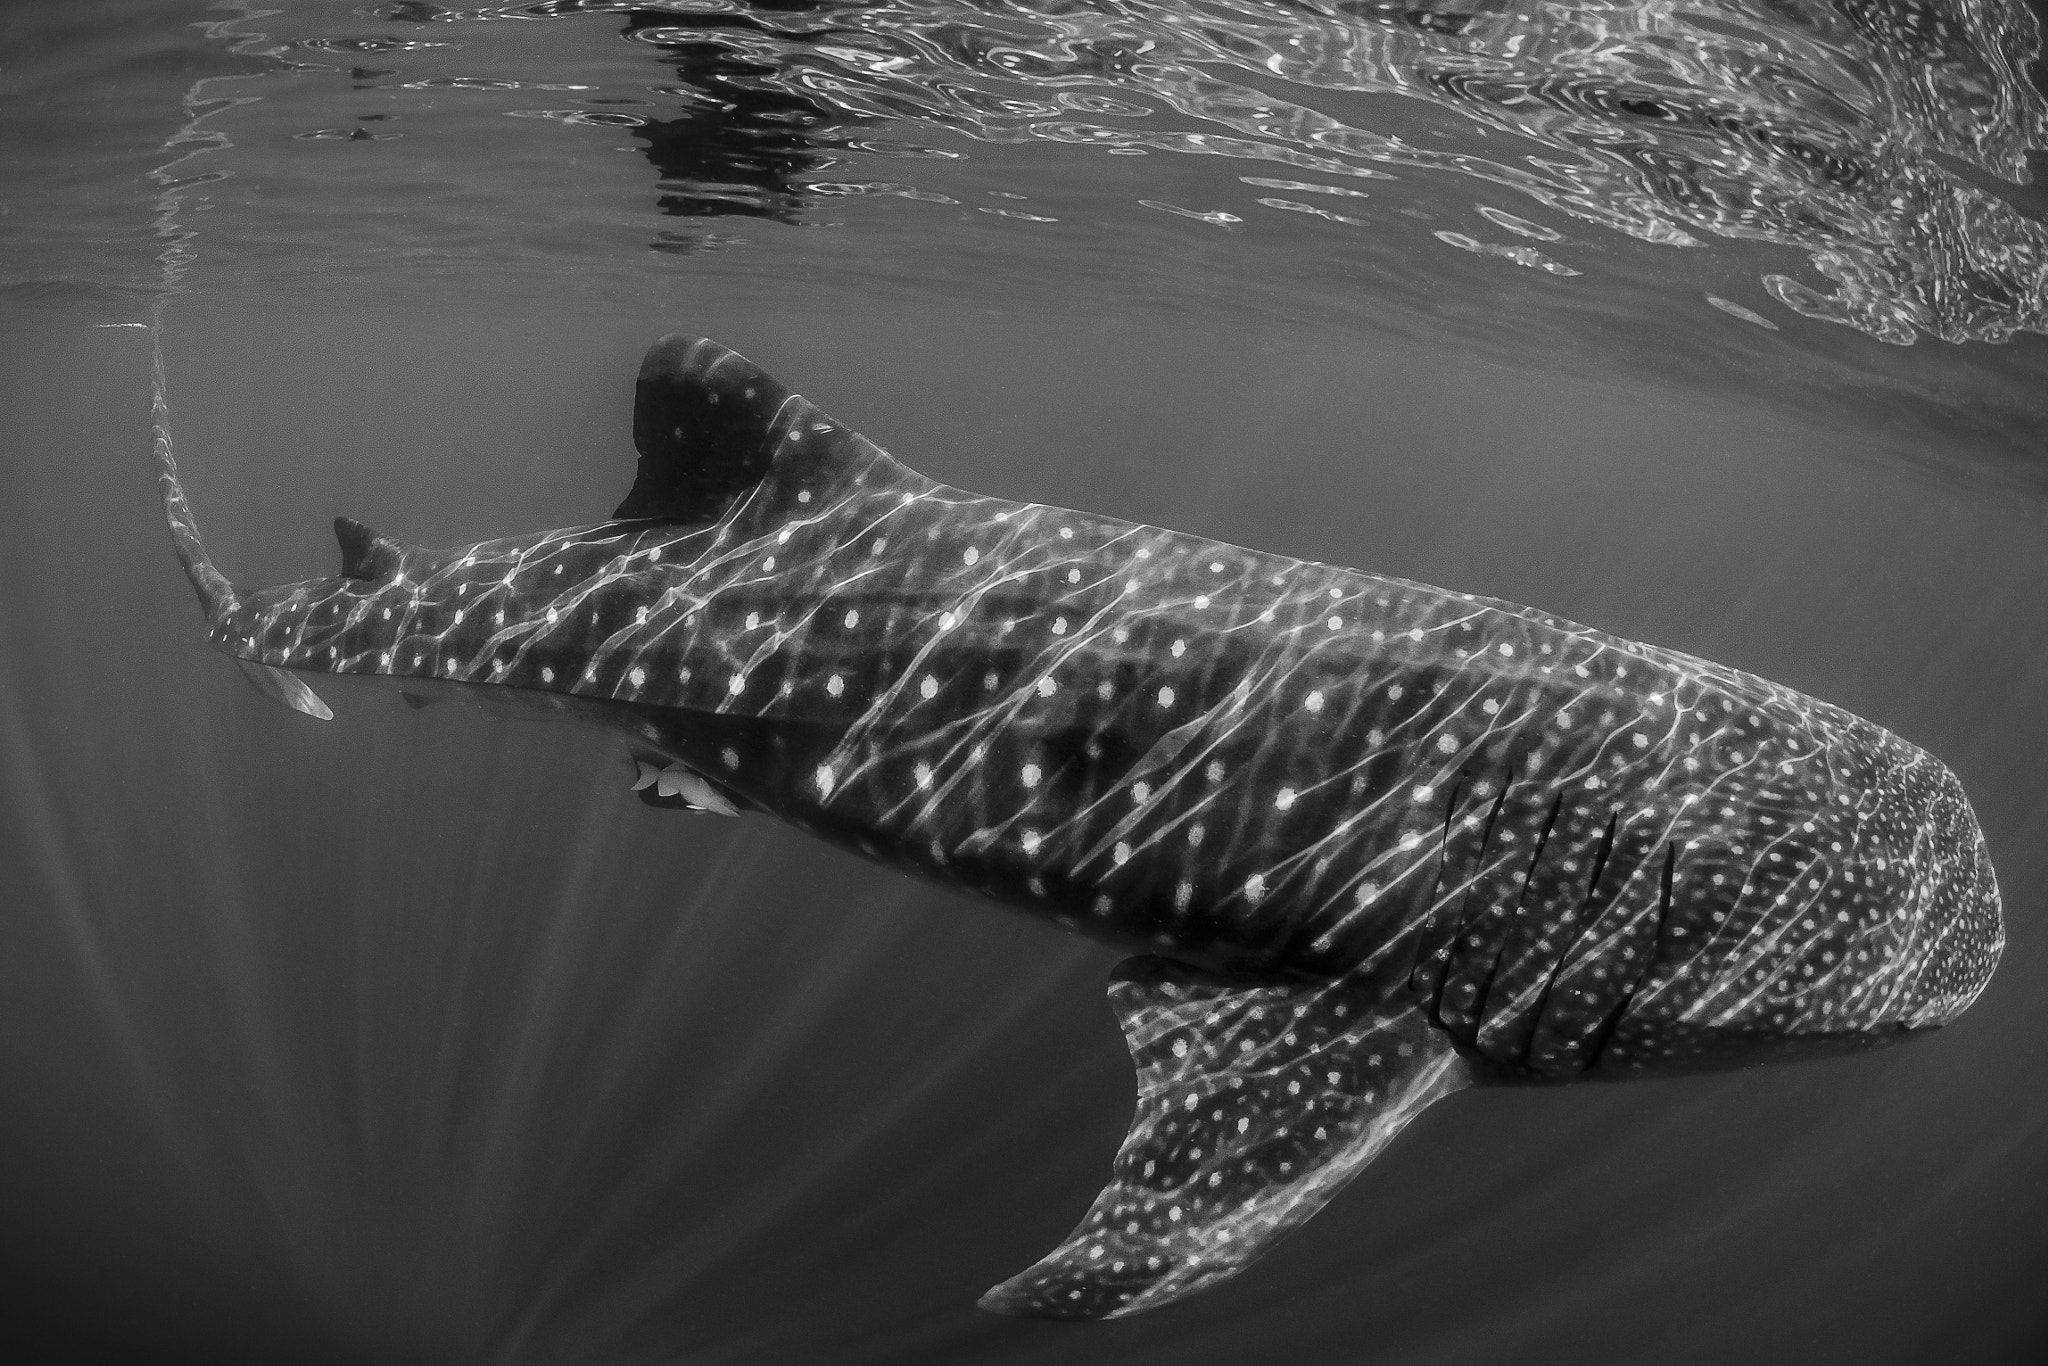 Nikon D7000 + Nikon AF DX Fisheye-Nikkor 10.5mm F2.8G ED sample photo. Whale shark photography